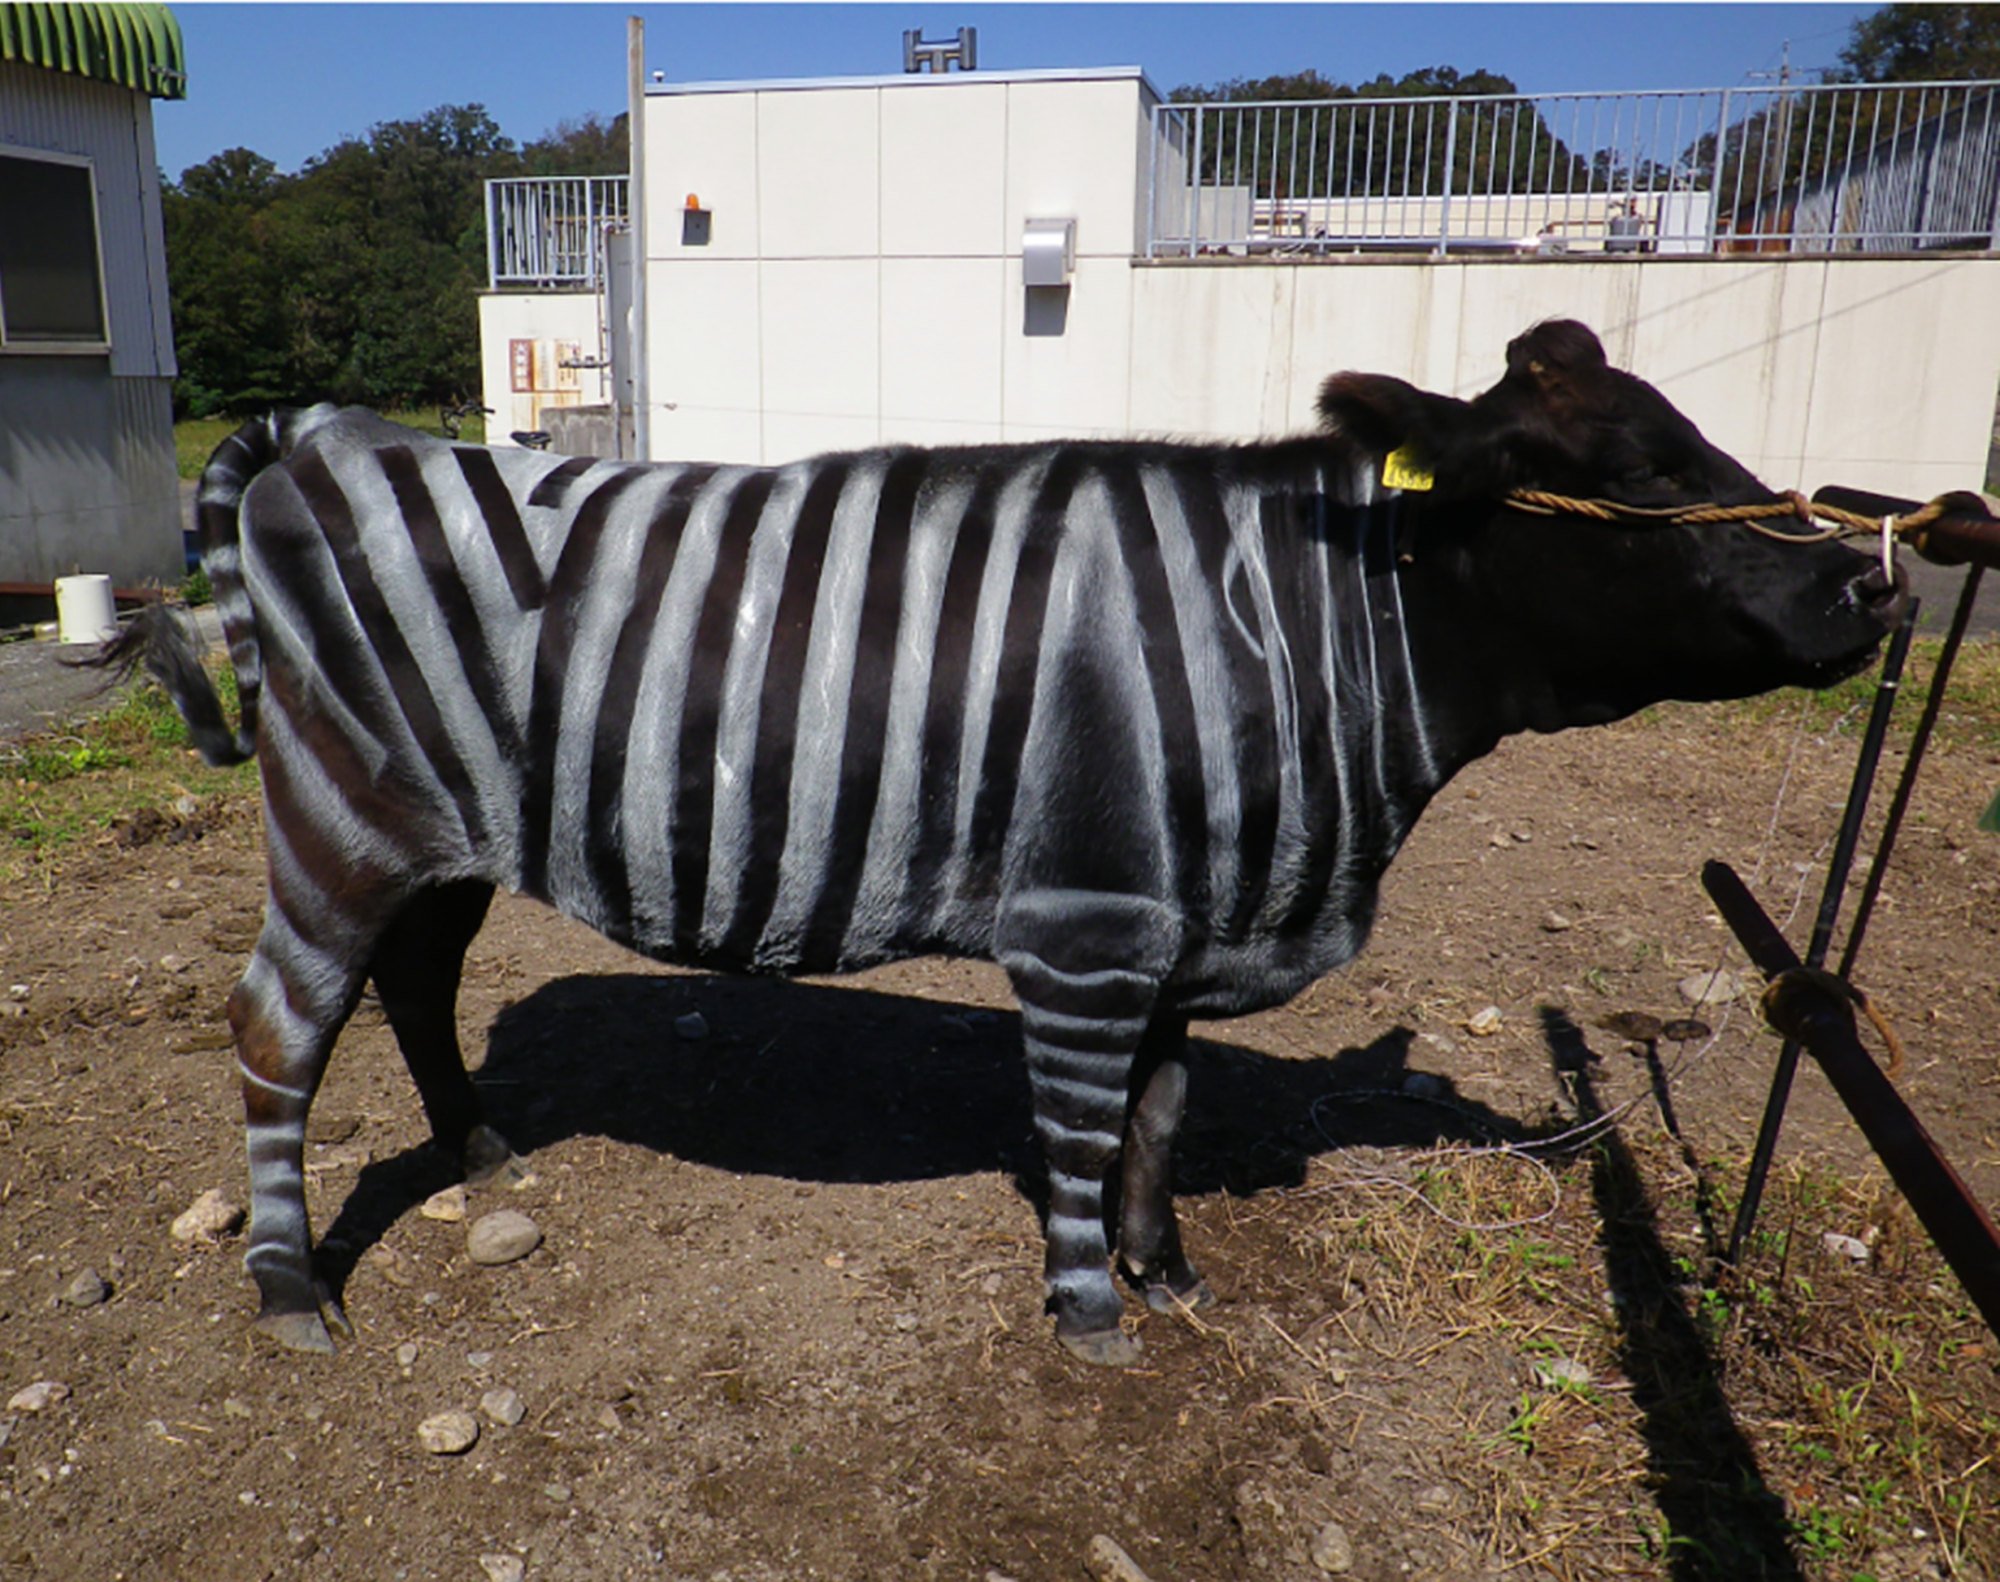 A black-and-white striped cow. Photo: Kojima et al